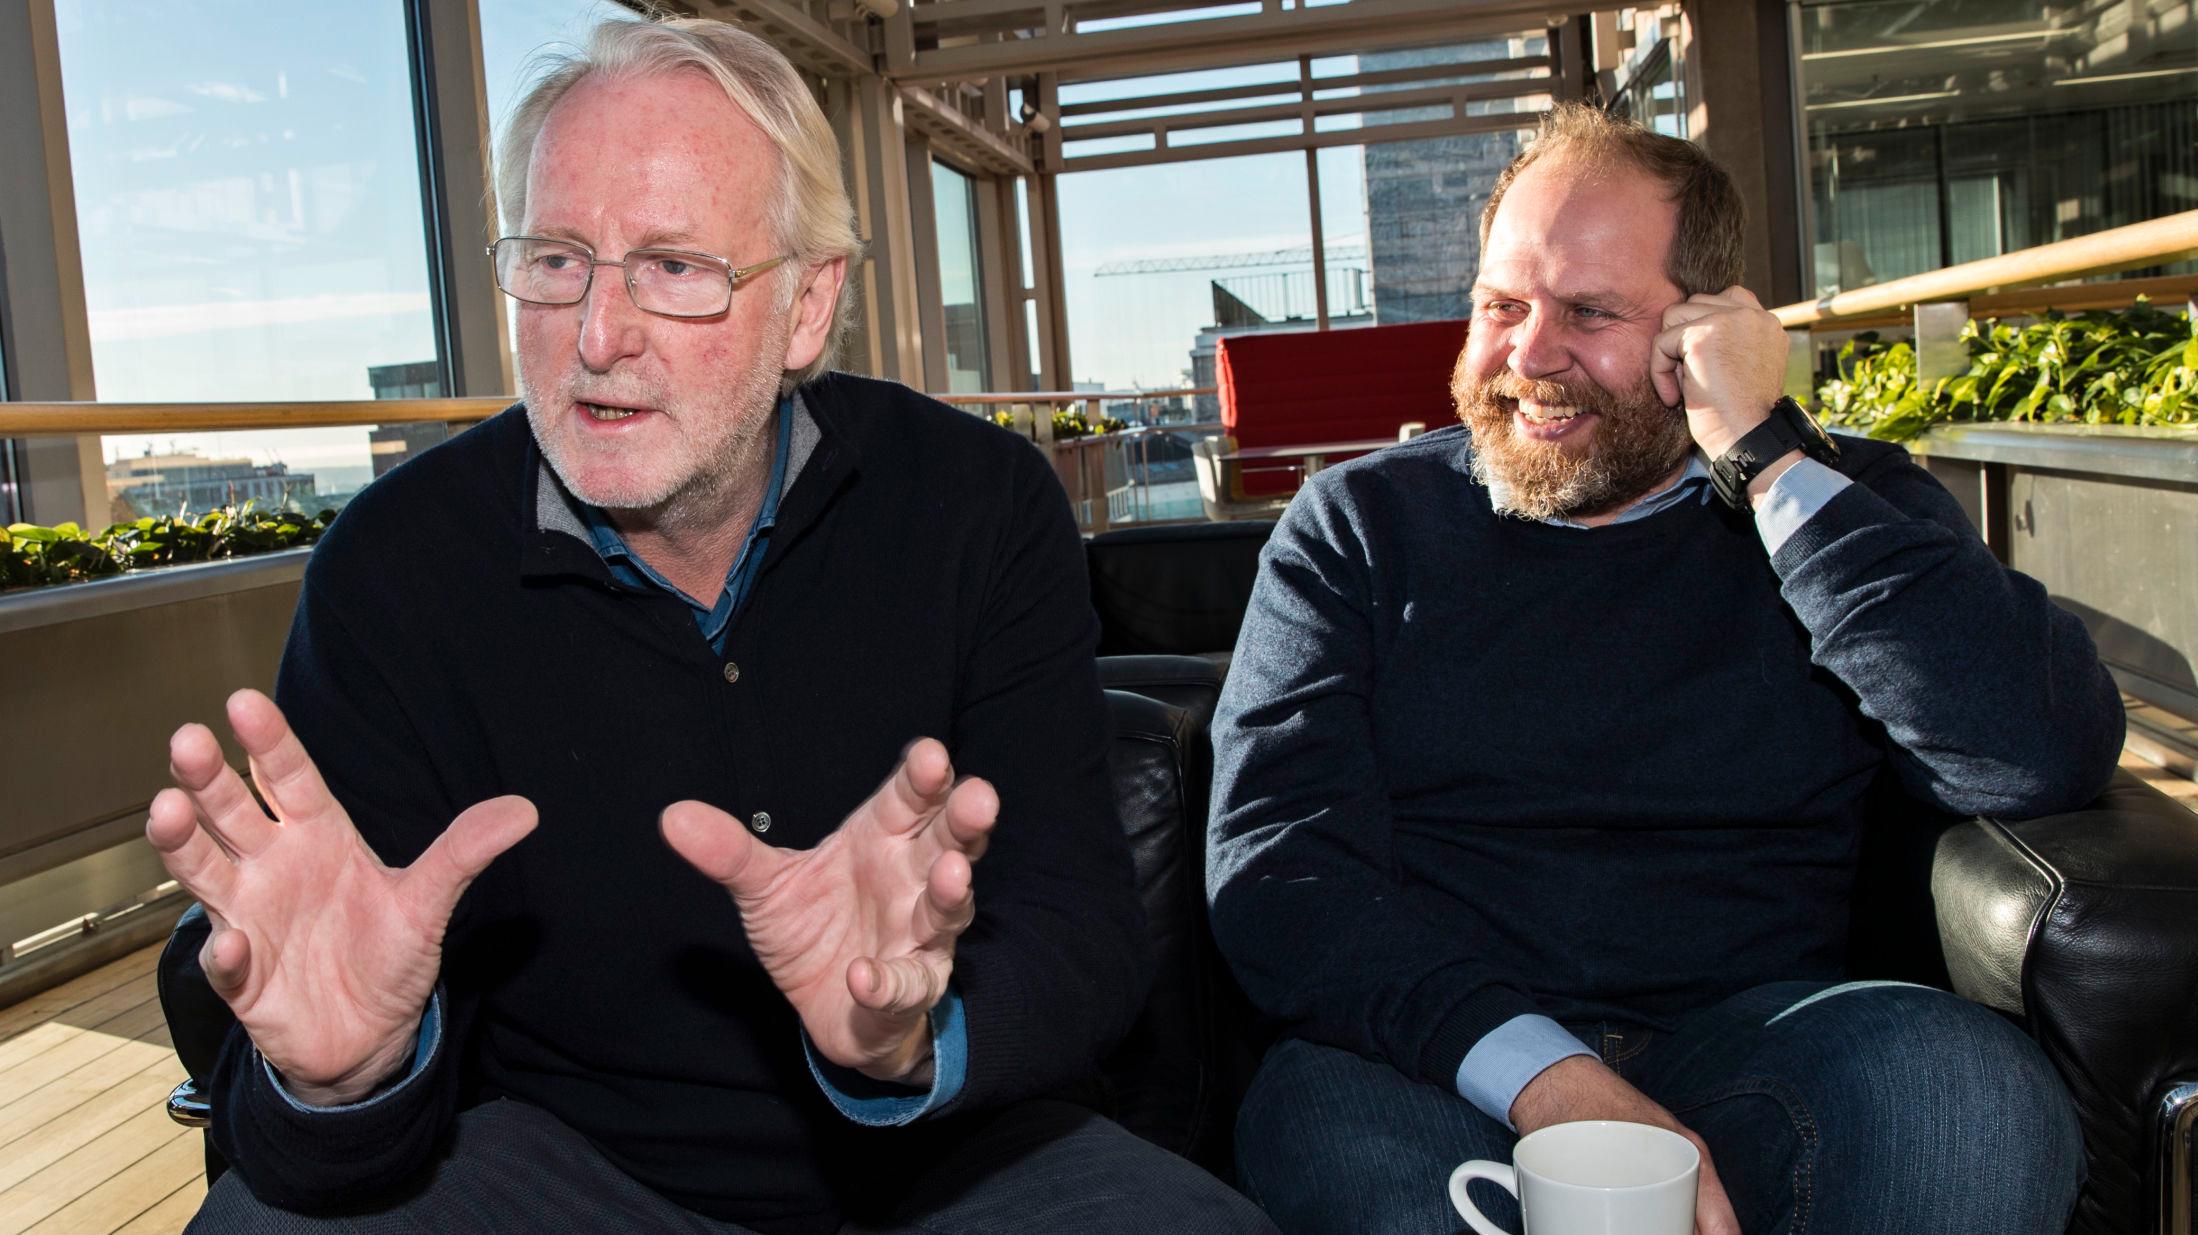 LÆRERIK REISE: Både Hellstrøm og Svendsen forteller at de har lært mye på reisene gjennom programmet Truls à la Hellstrøm. Foto: Hallgeir Vågenes / VG